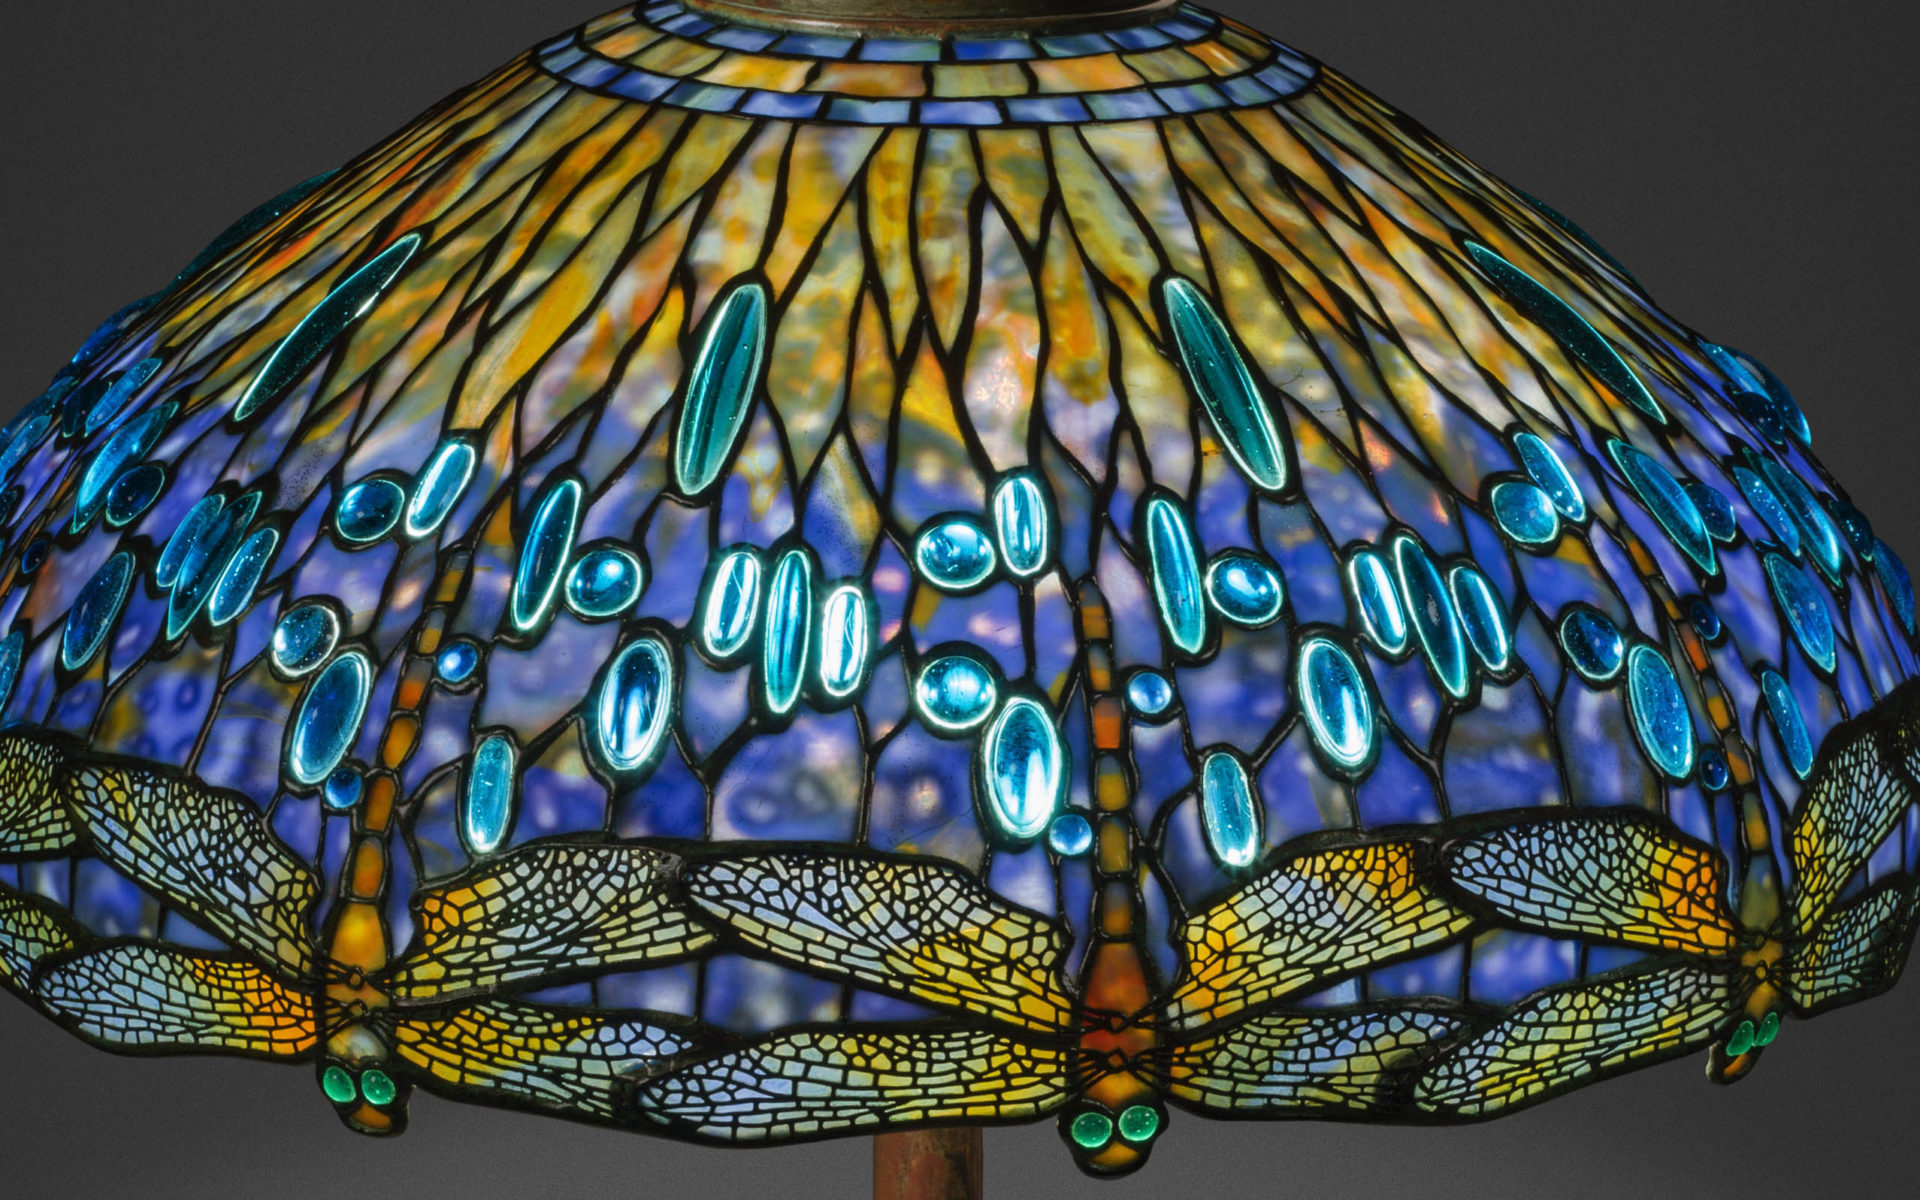 انواع شیشه تیفانی در ابعاد مختلف و طرح، رنگهای زیبا